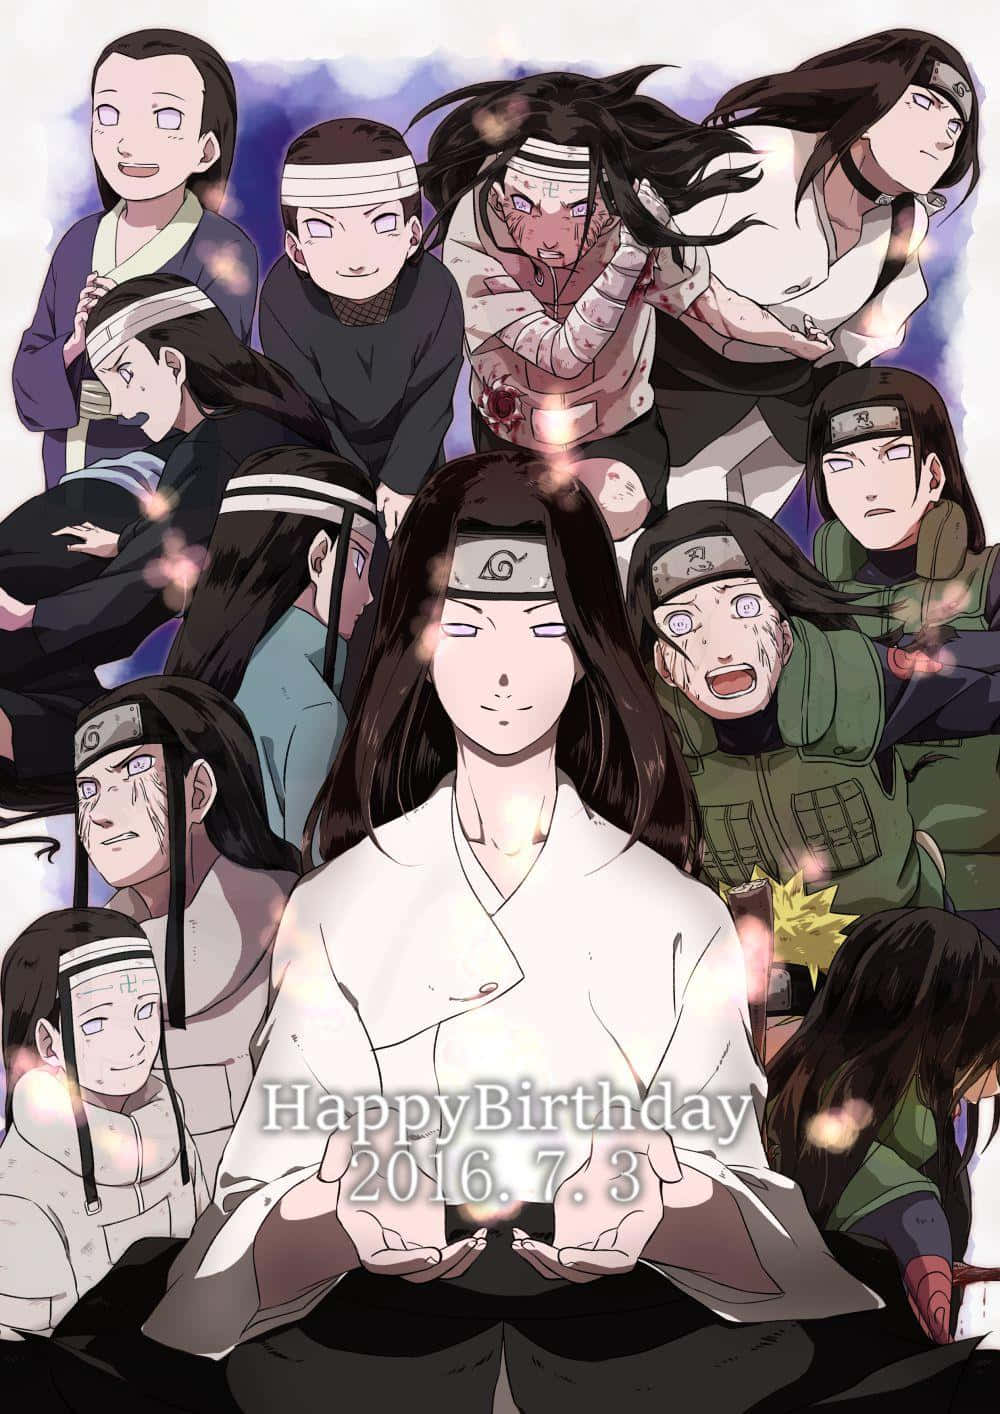 Narutoalles Gute Zum Geburtstag Von Naruto - Naruto - Naruto - Na Wallpaper